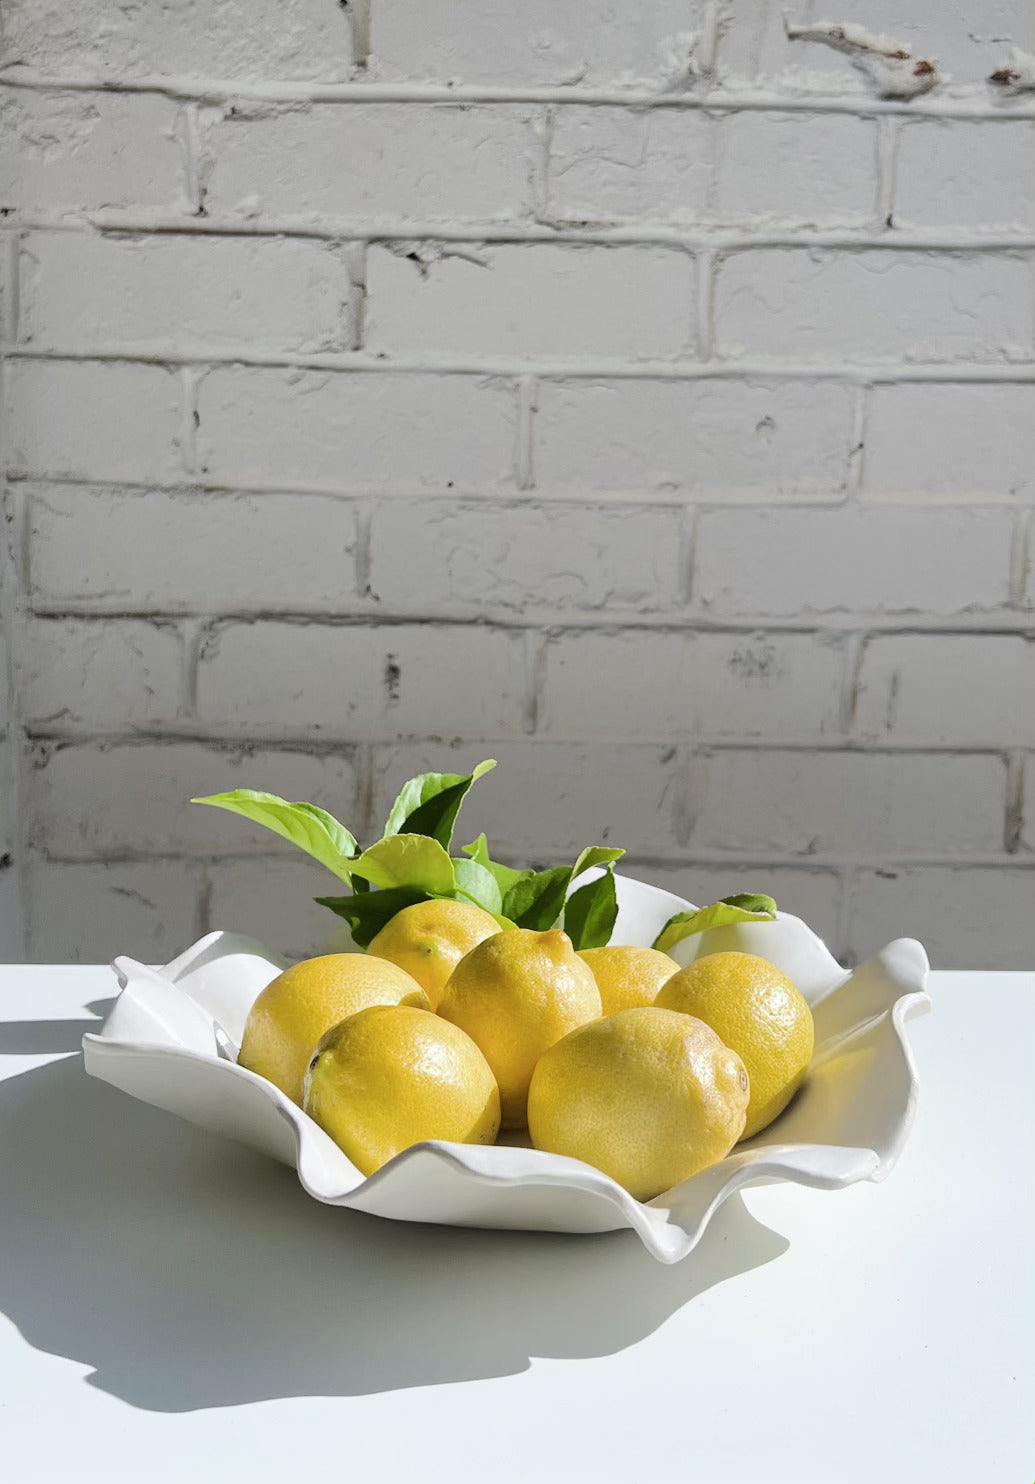 handmade platter with lemons